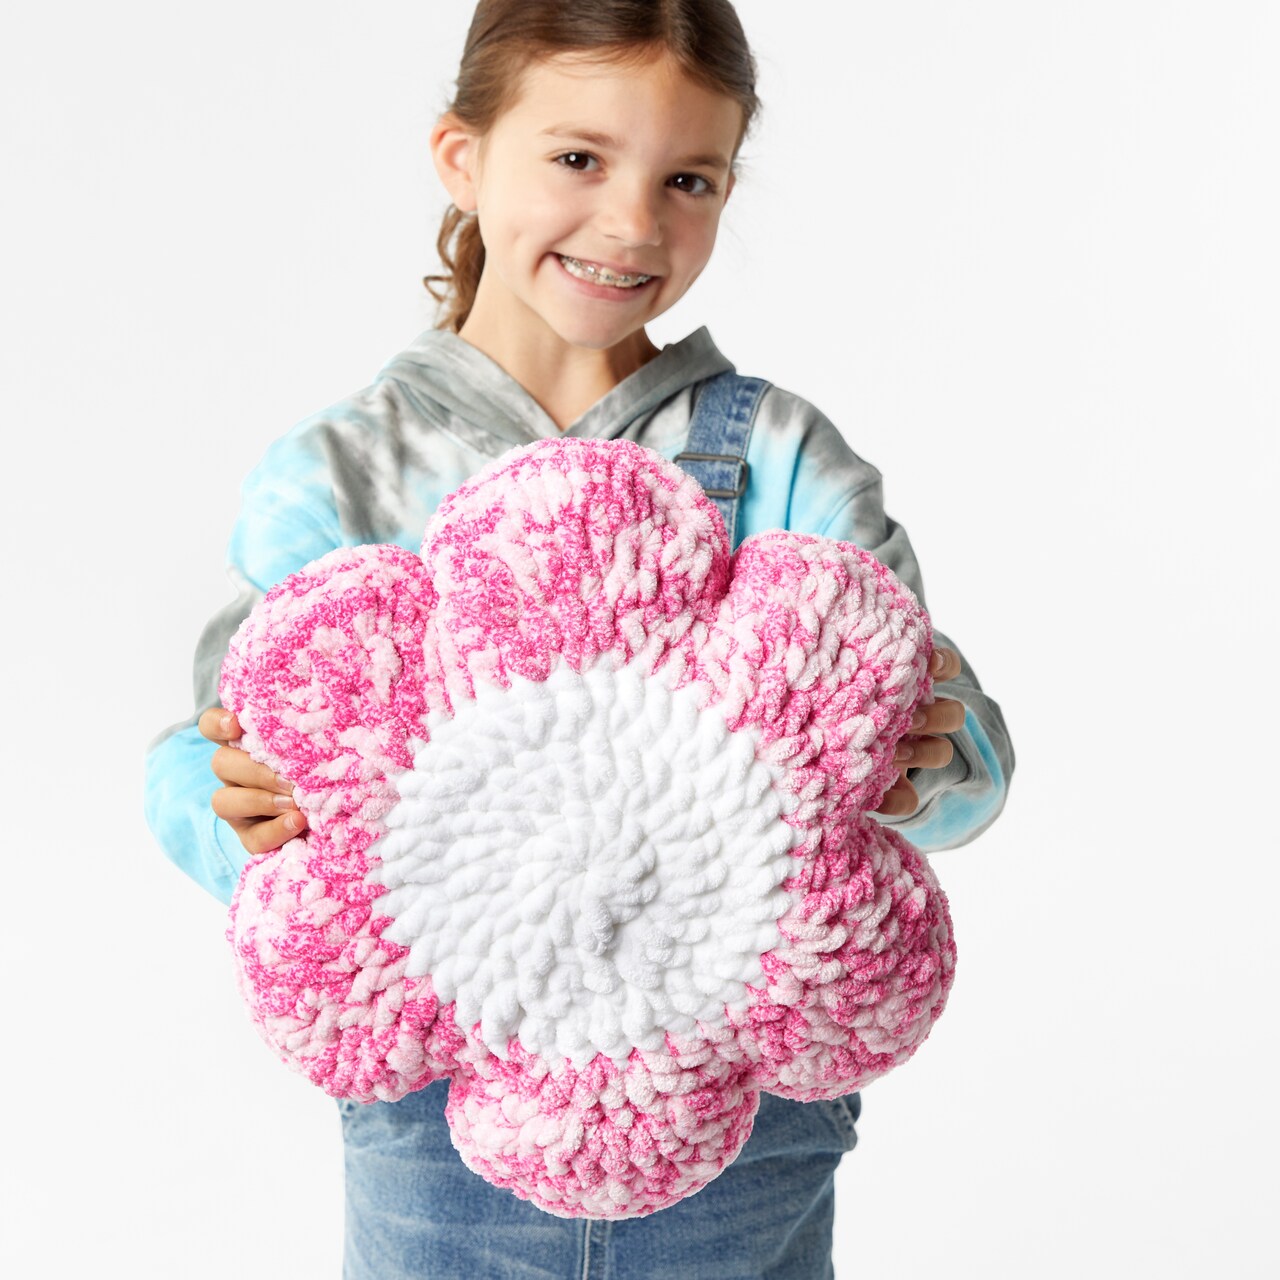 Crochet a Flower Pillow with Liz Salazar